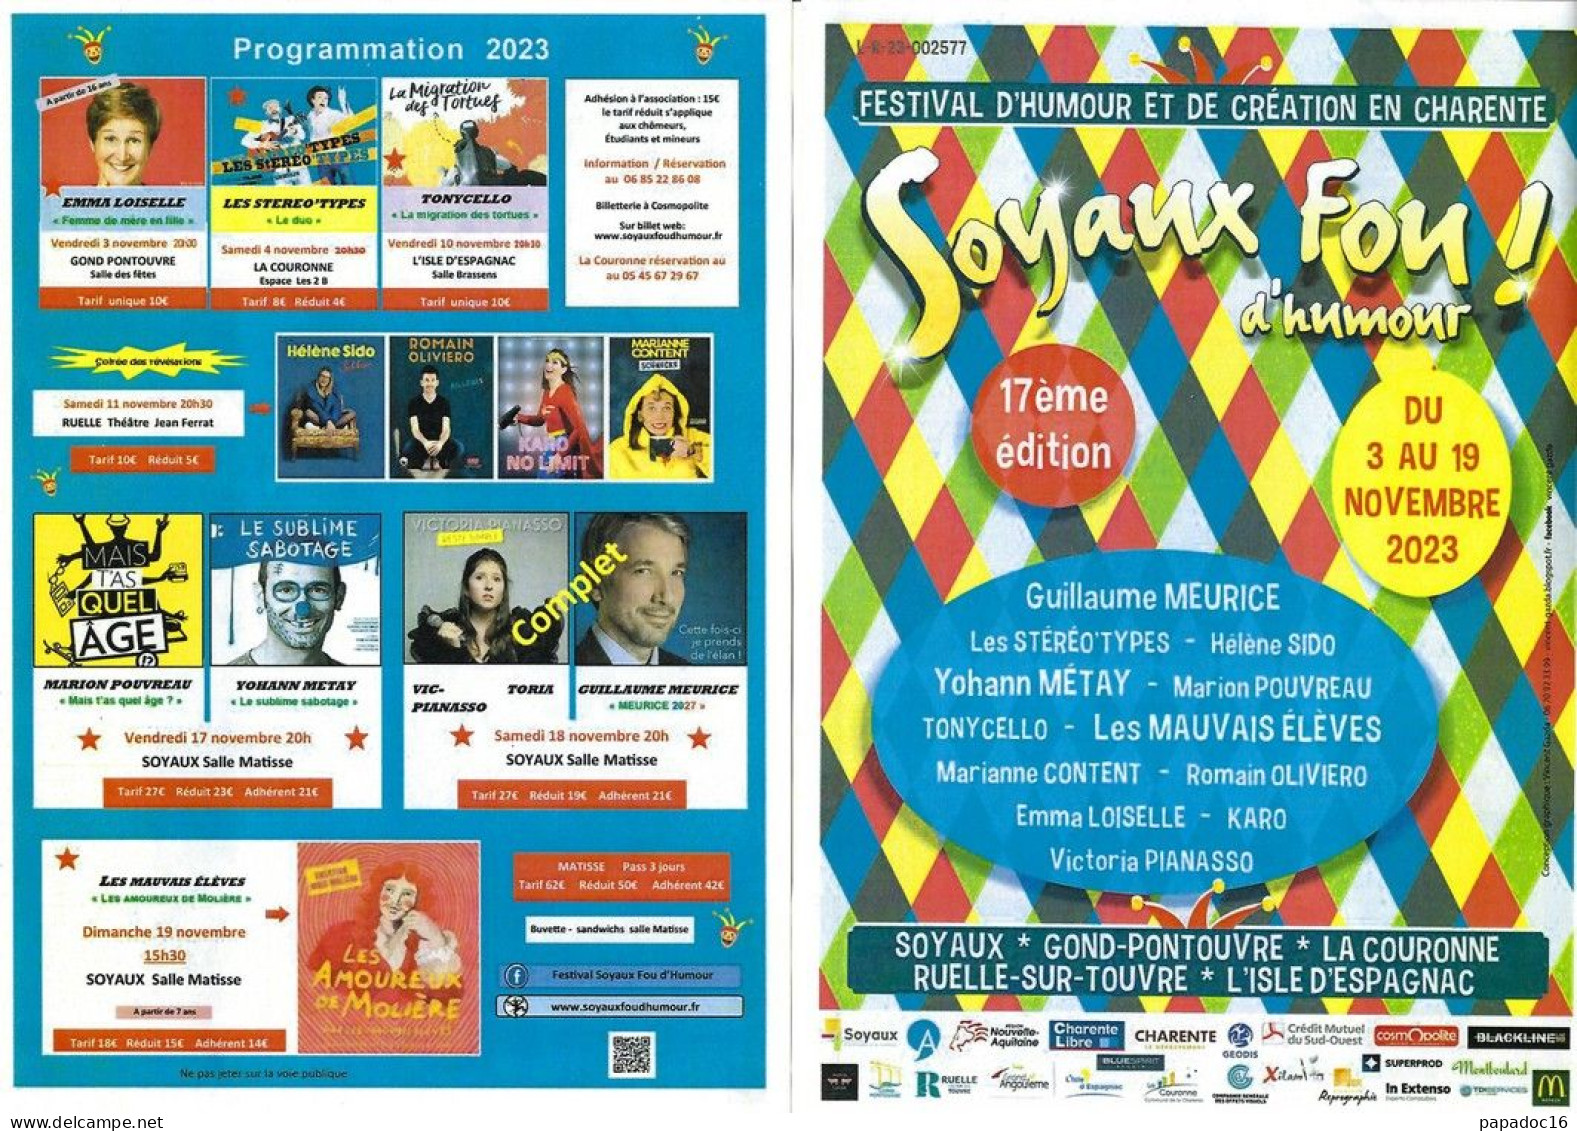 Flyer - Soyaux Fou D'humour ! - 17e Festival D'humour Et De Création En Charente - 3-19 Novembre 2023 - Werbung